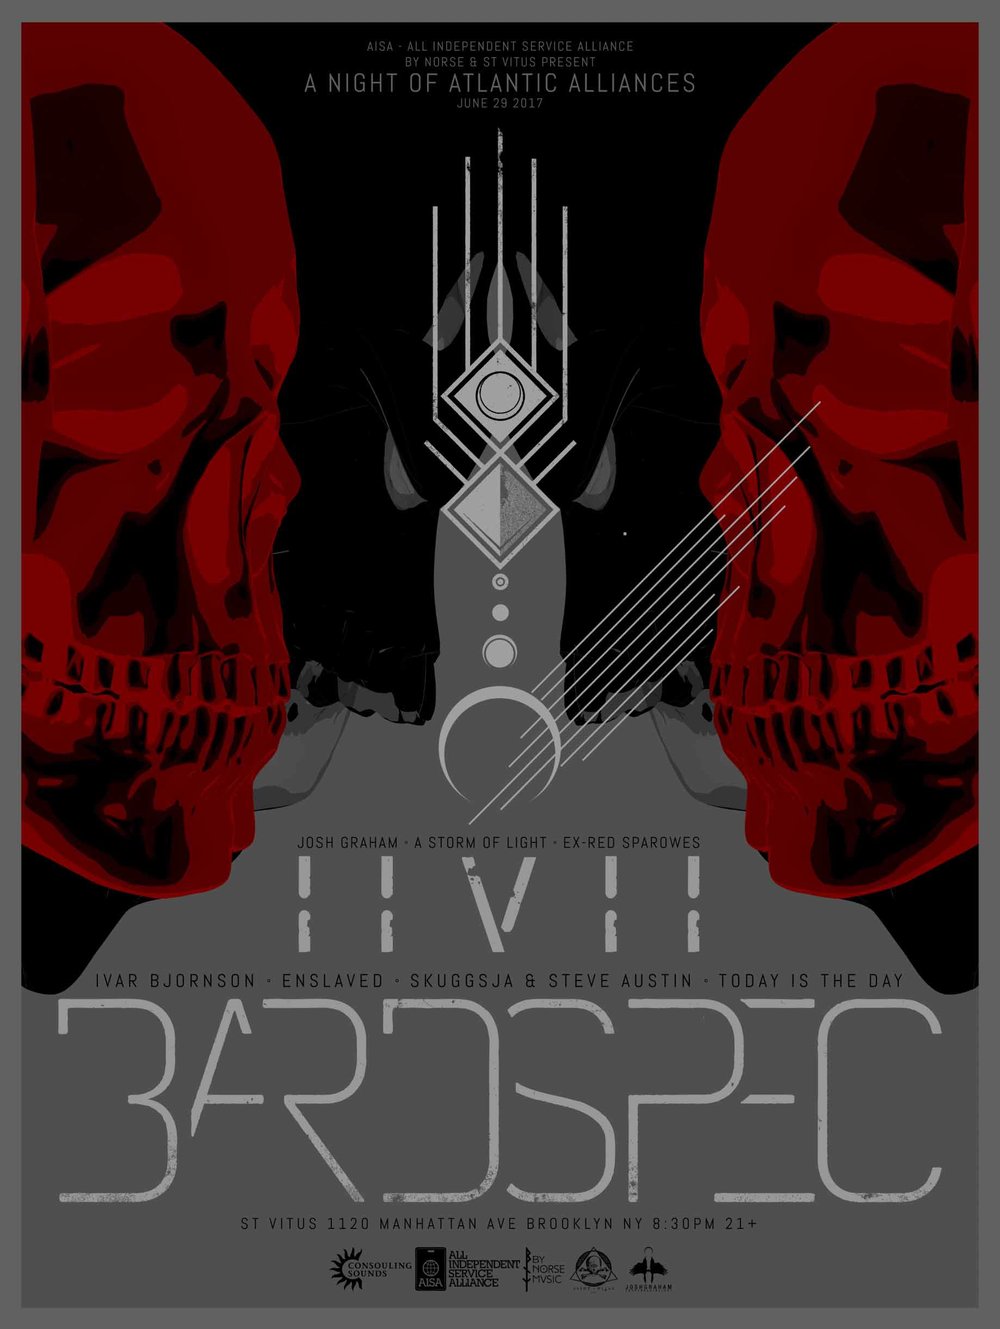 Bardspec / IIVII / Gnaw at Saint Vitus NYC